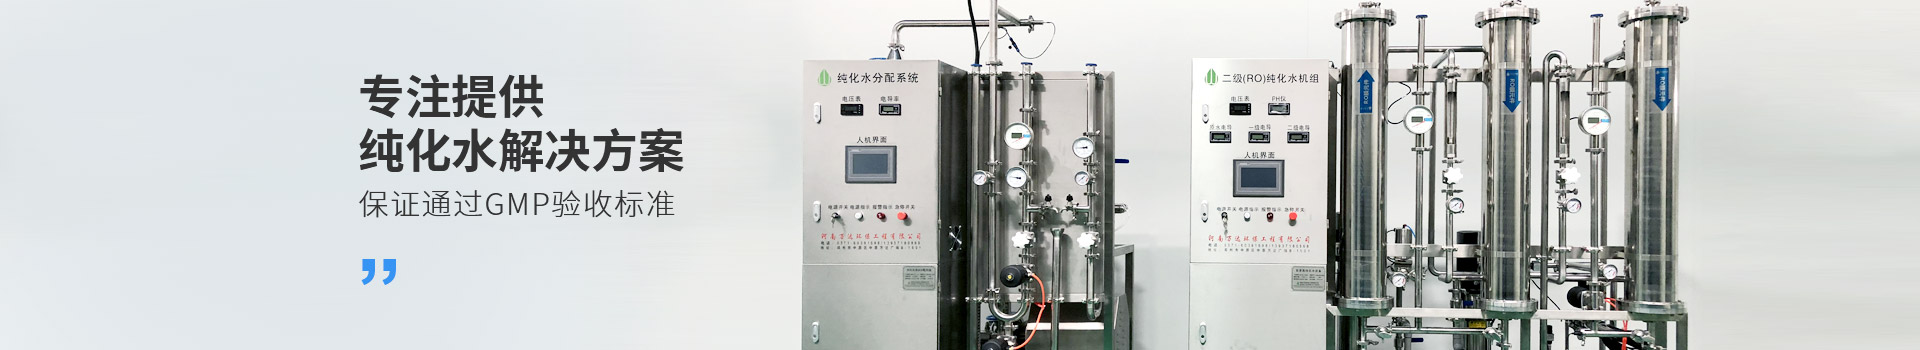 酒厂行业用纯水系统-行业资料-武汉纯水设备厂家 (PC+WAP)-纯净水设备生产销售